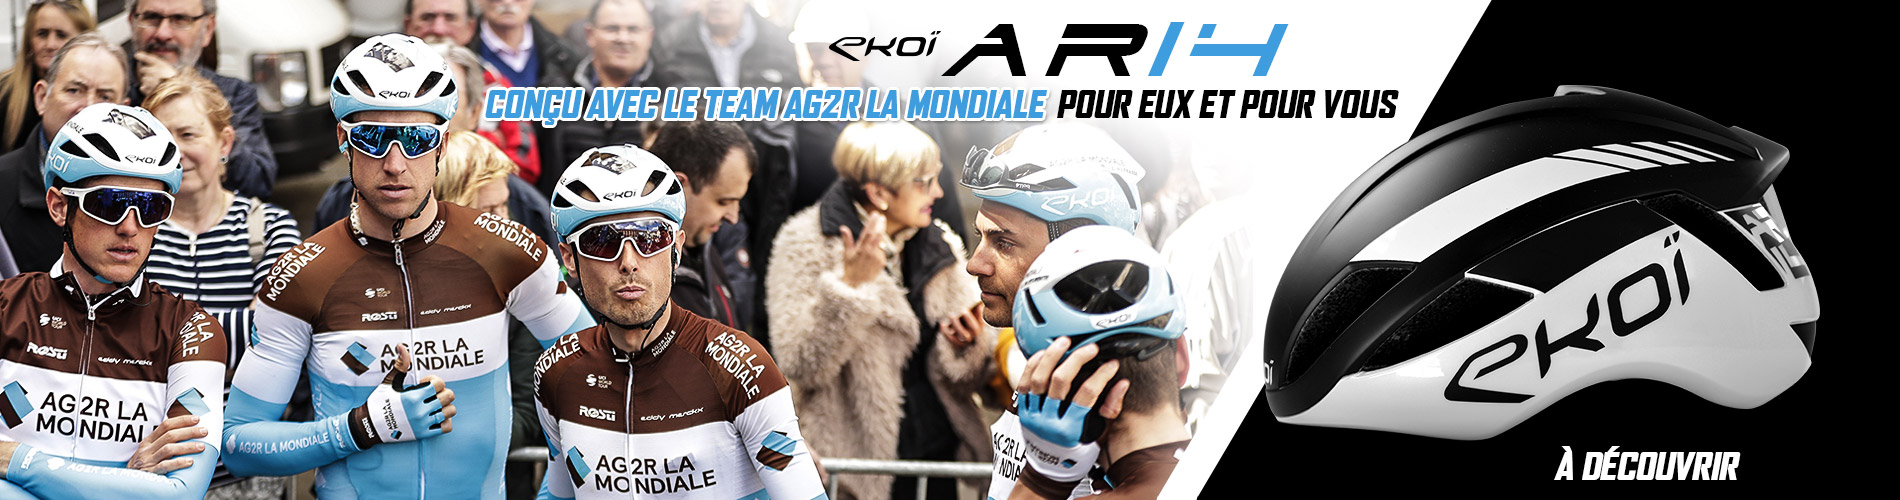 Ny EKOI AR14-hjälm med Team AG2R La Mondiale Cycling